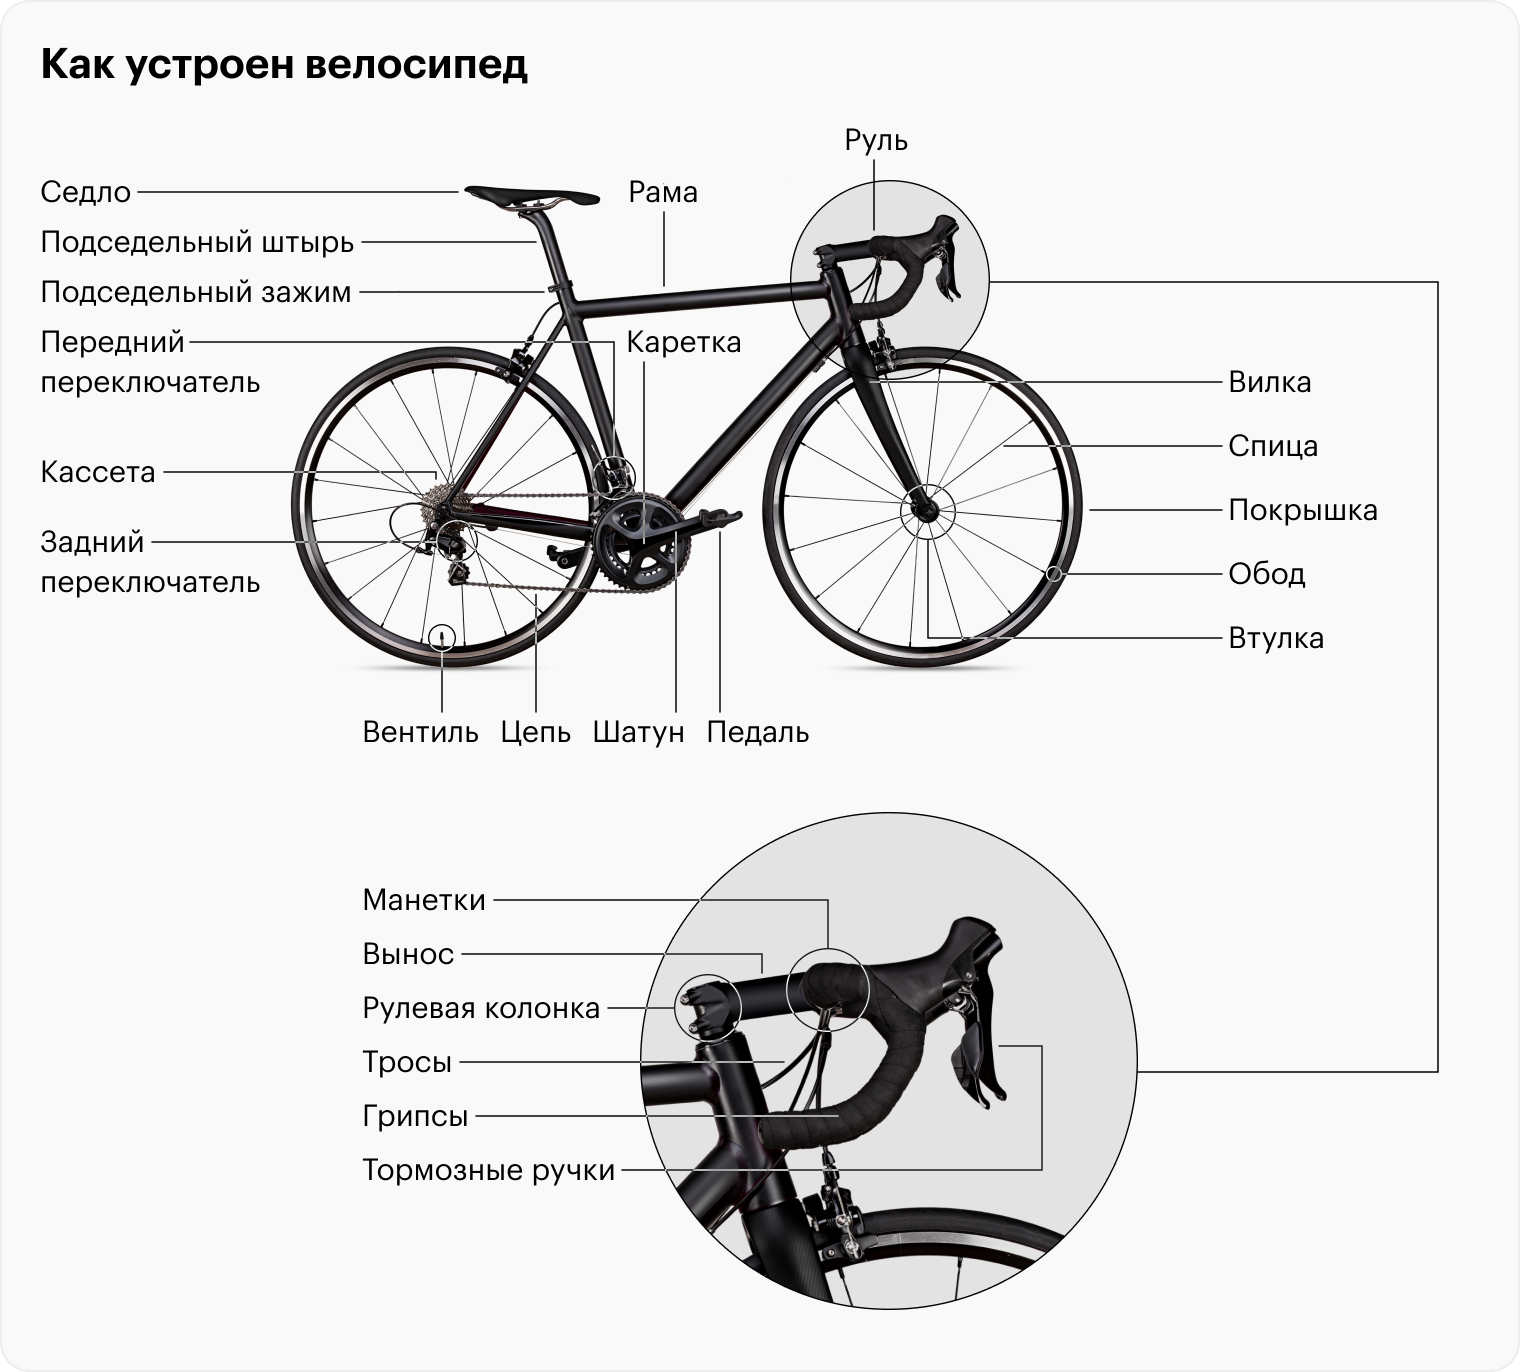 Велосипед состоит из трех основных частей: рамы, колес и навесного оборудования — всего, что навешивают на раму. Главные части навесного оборудования — это привод и тормоза